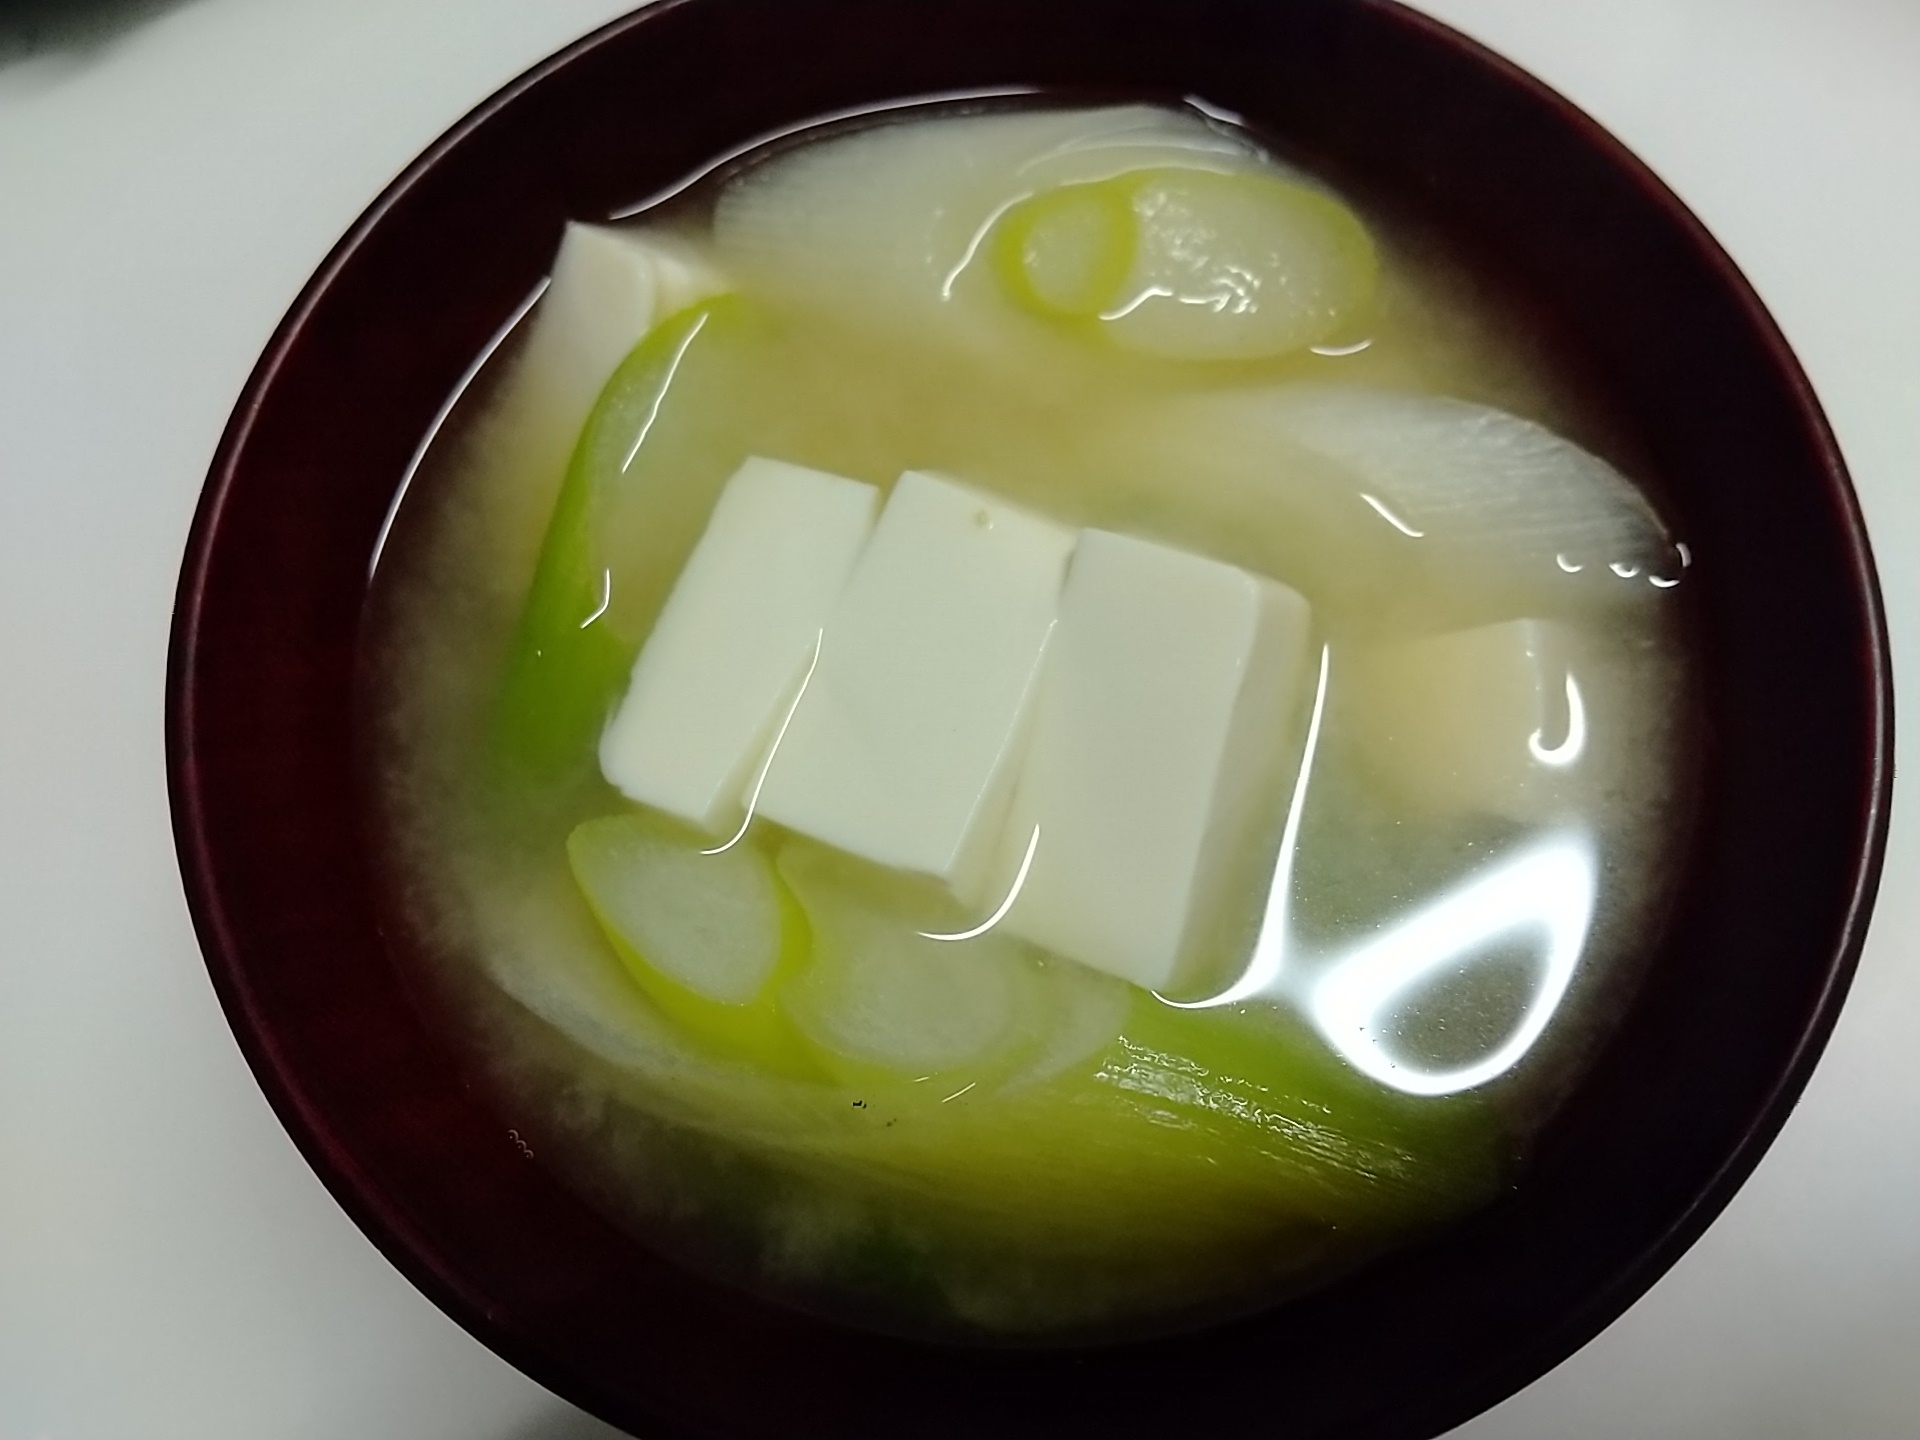 豆腐と長ねぎの味噌汁